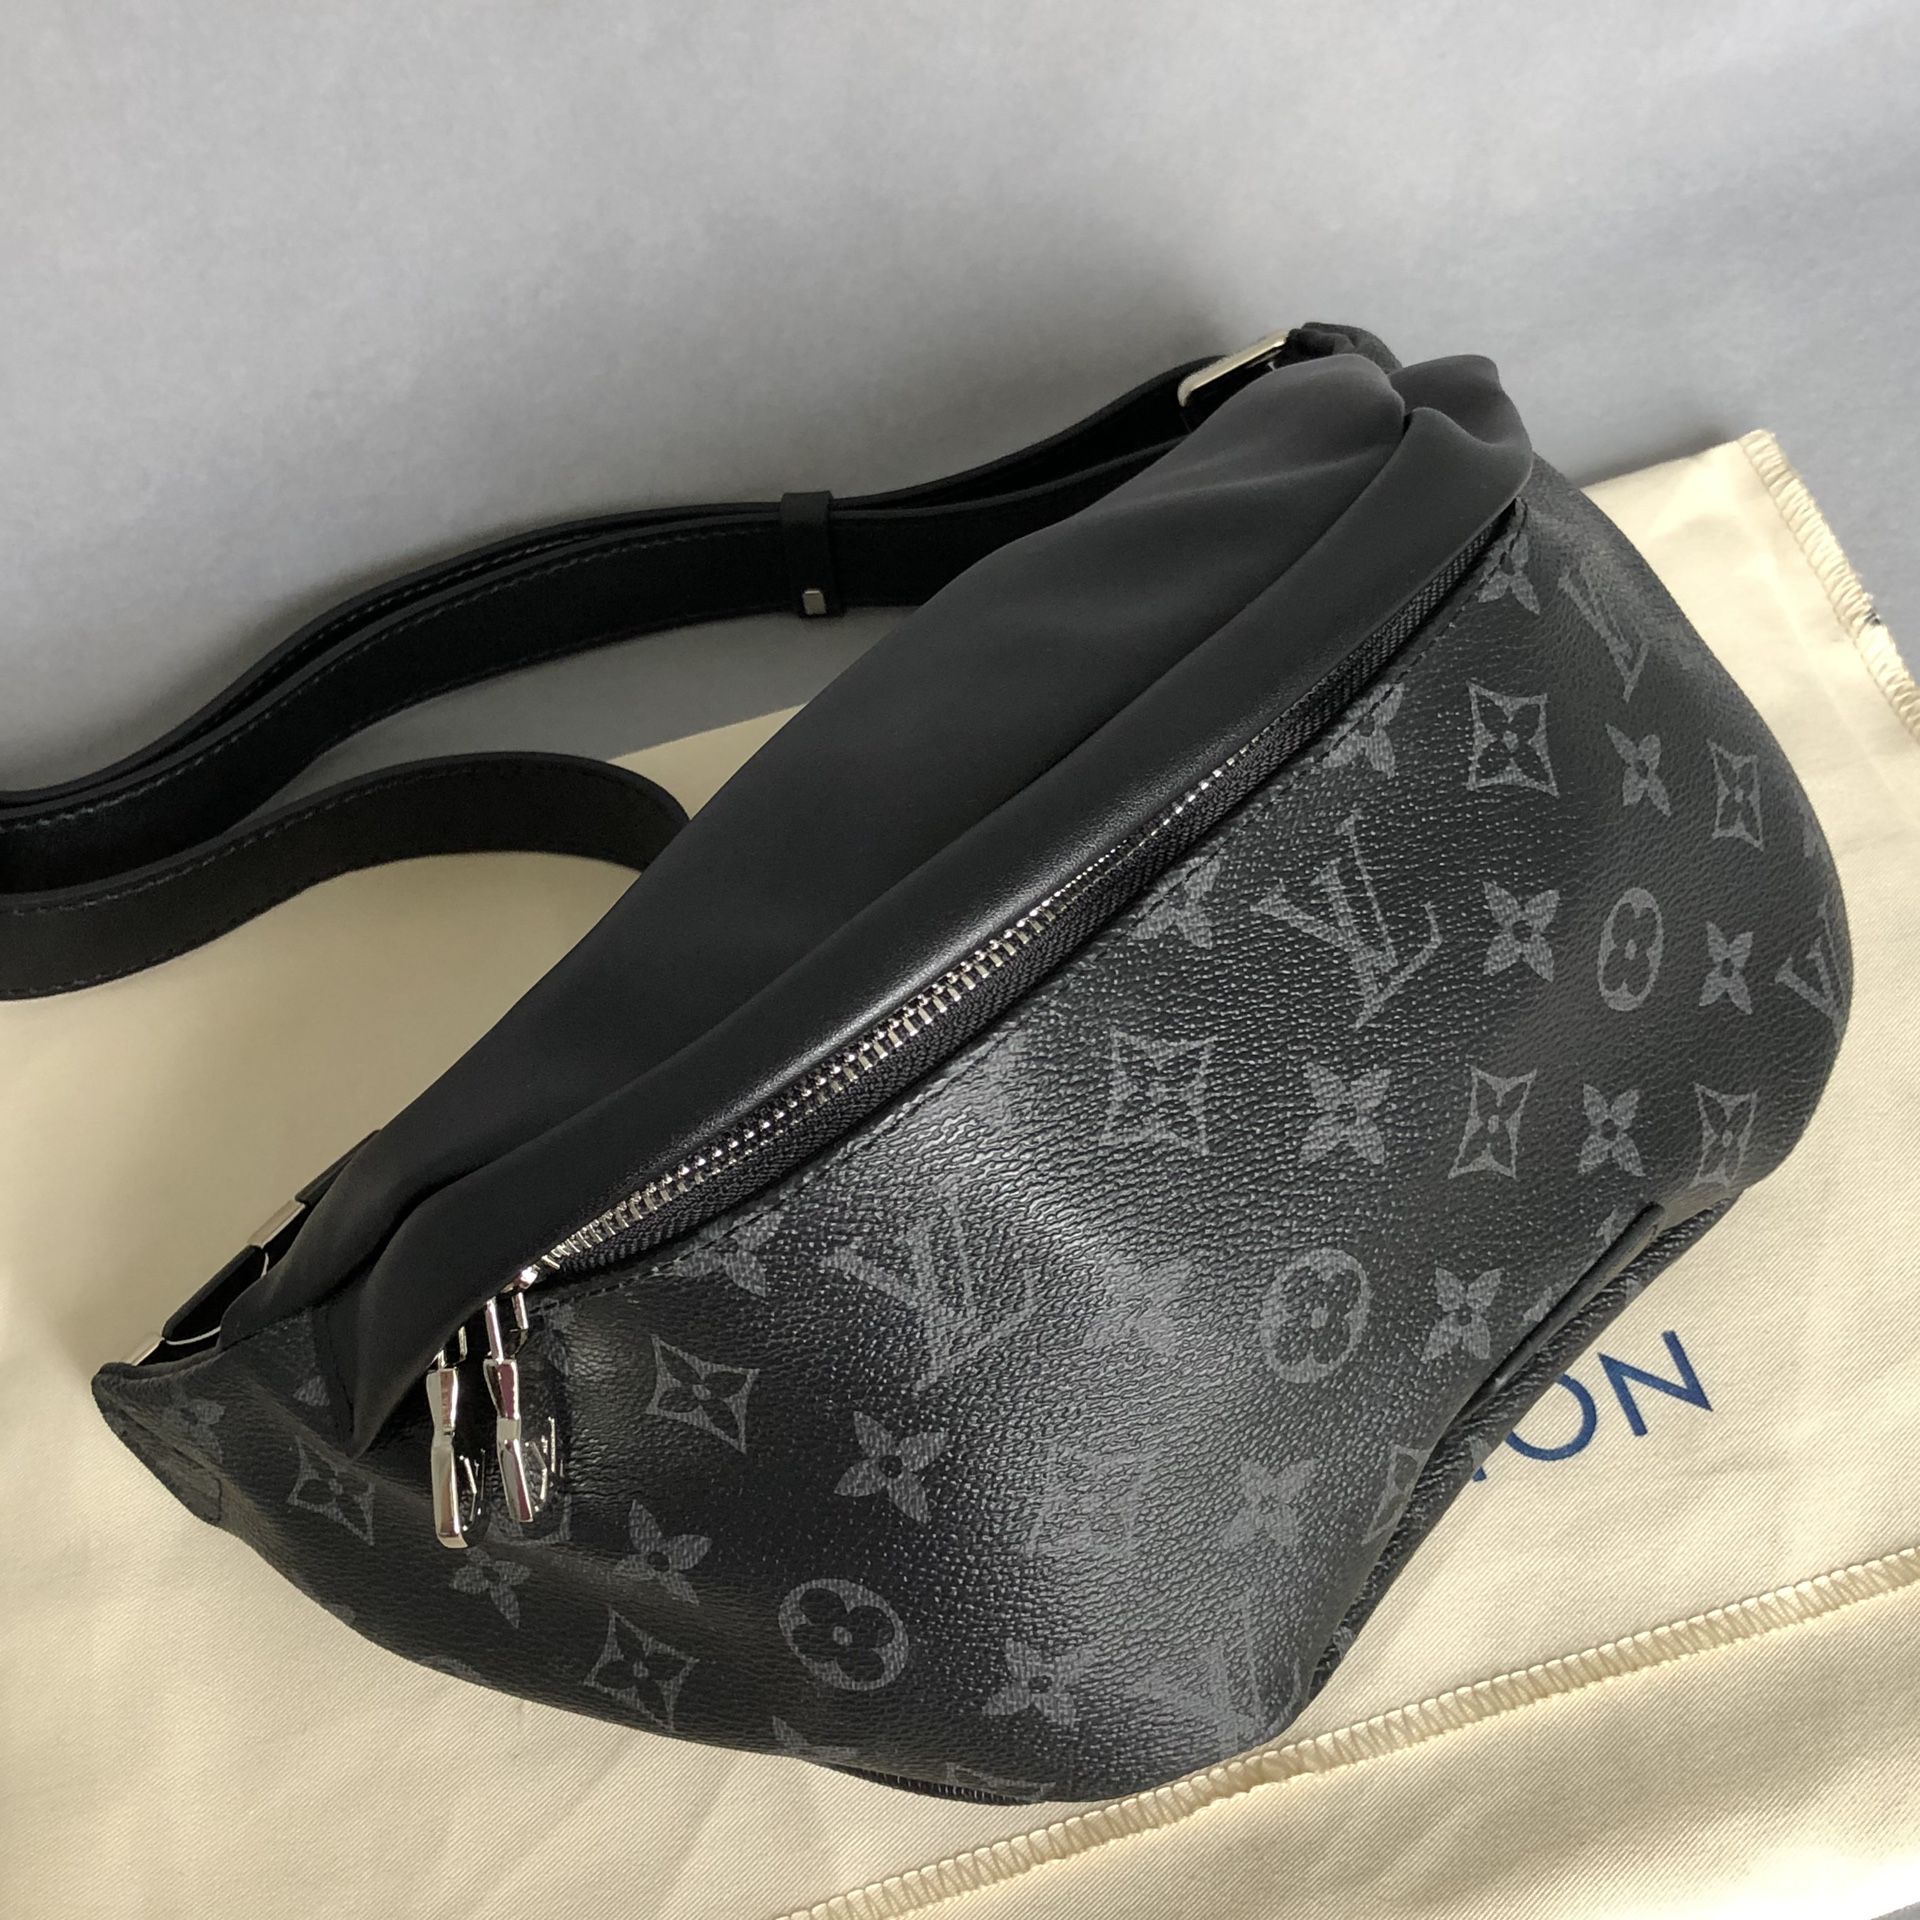 Louis Vuitton Belt Bags For Sale